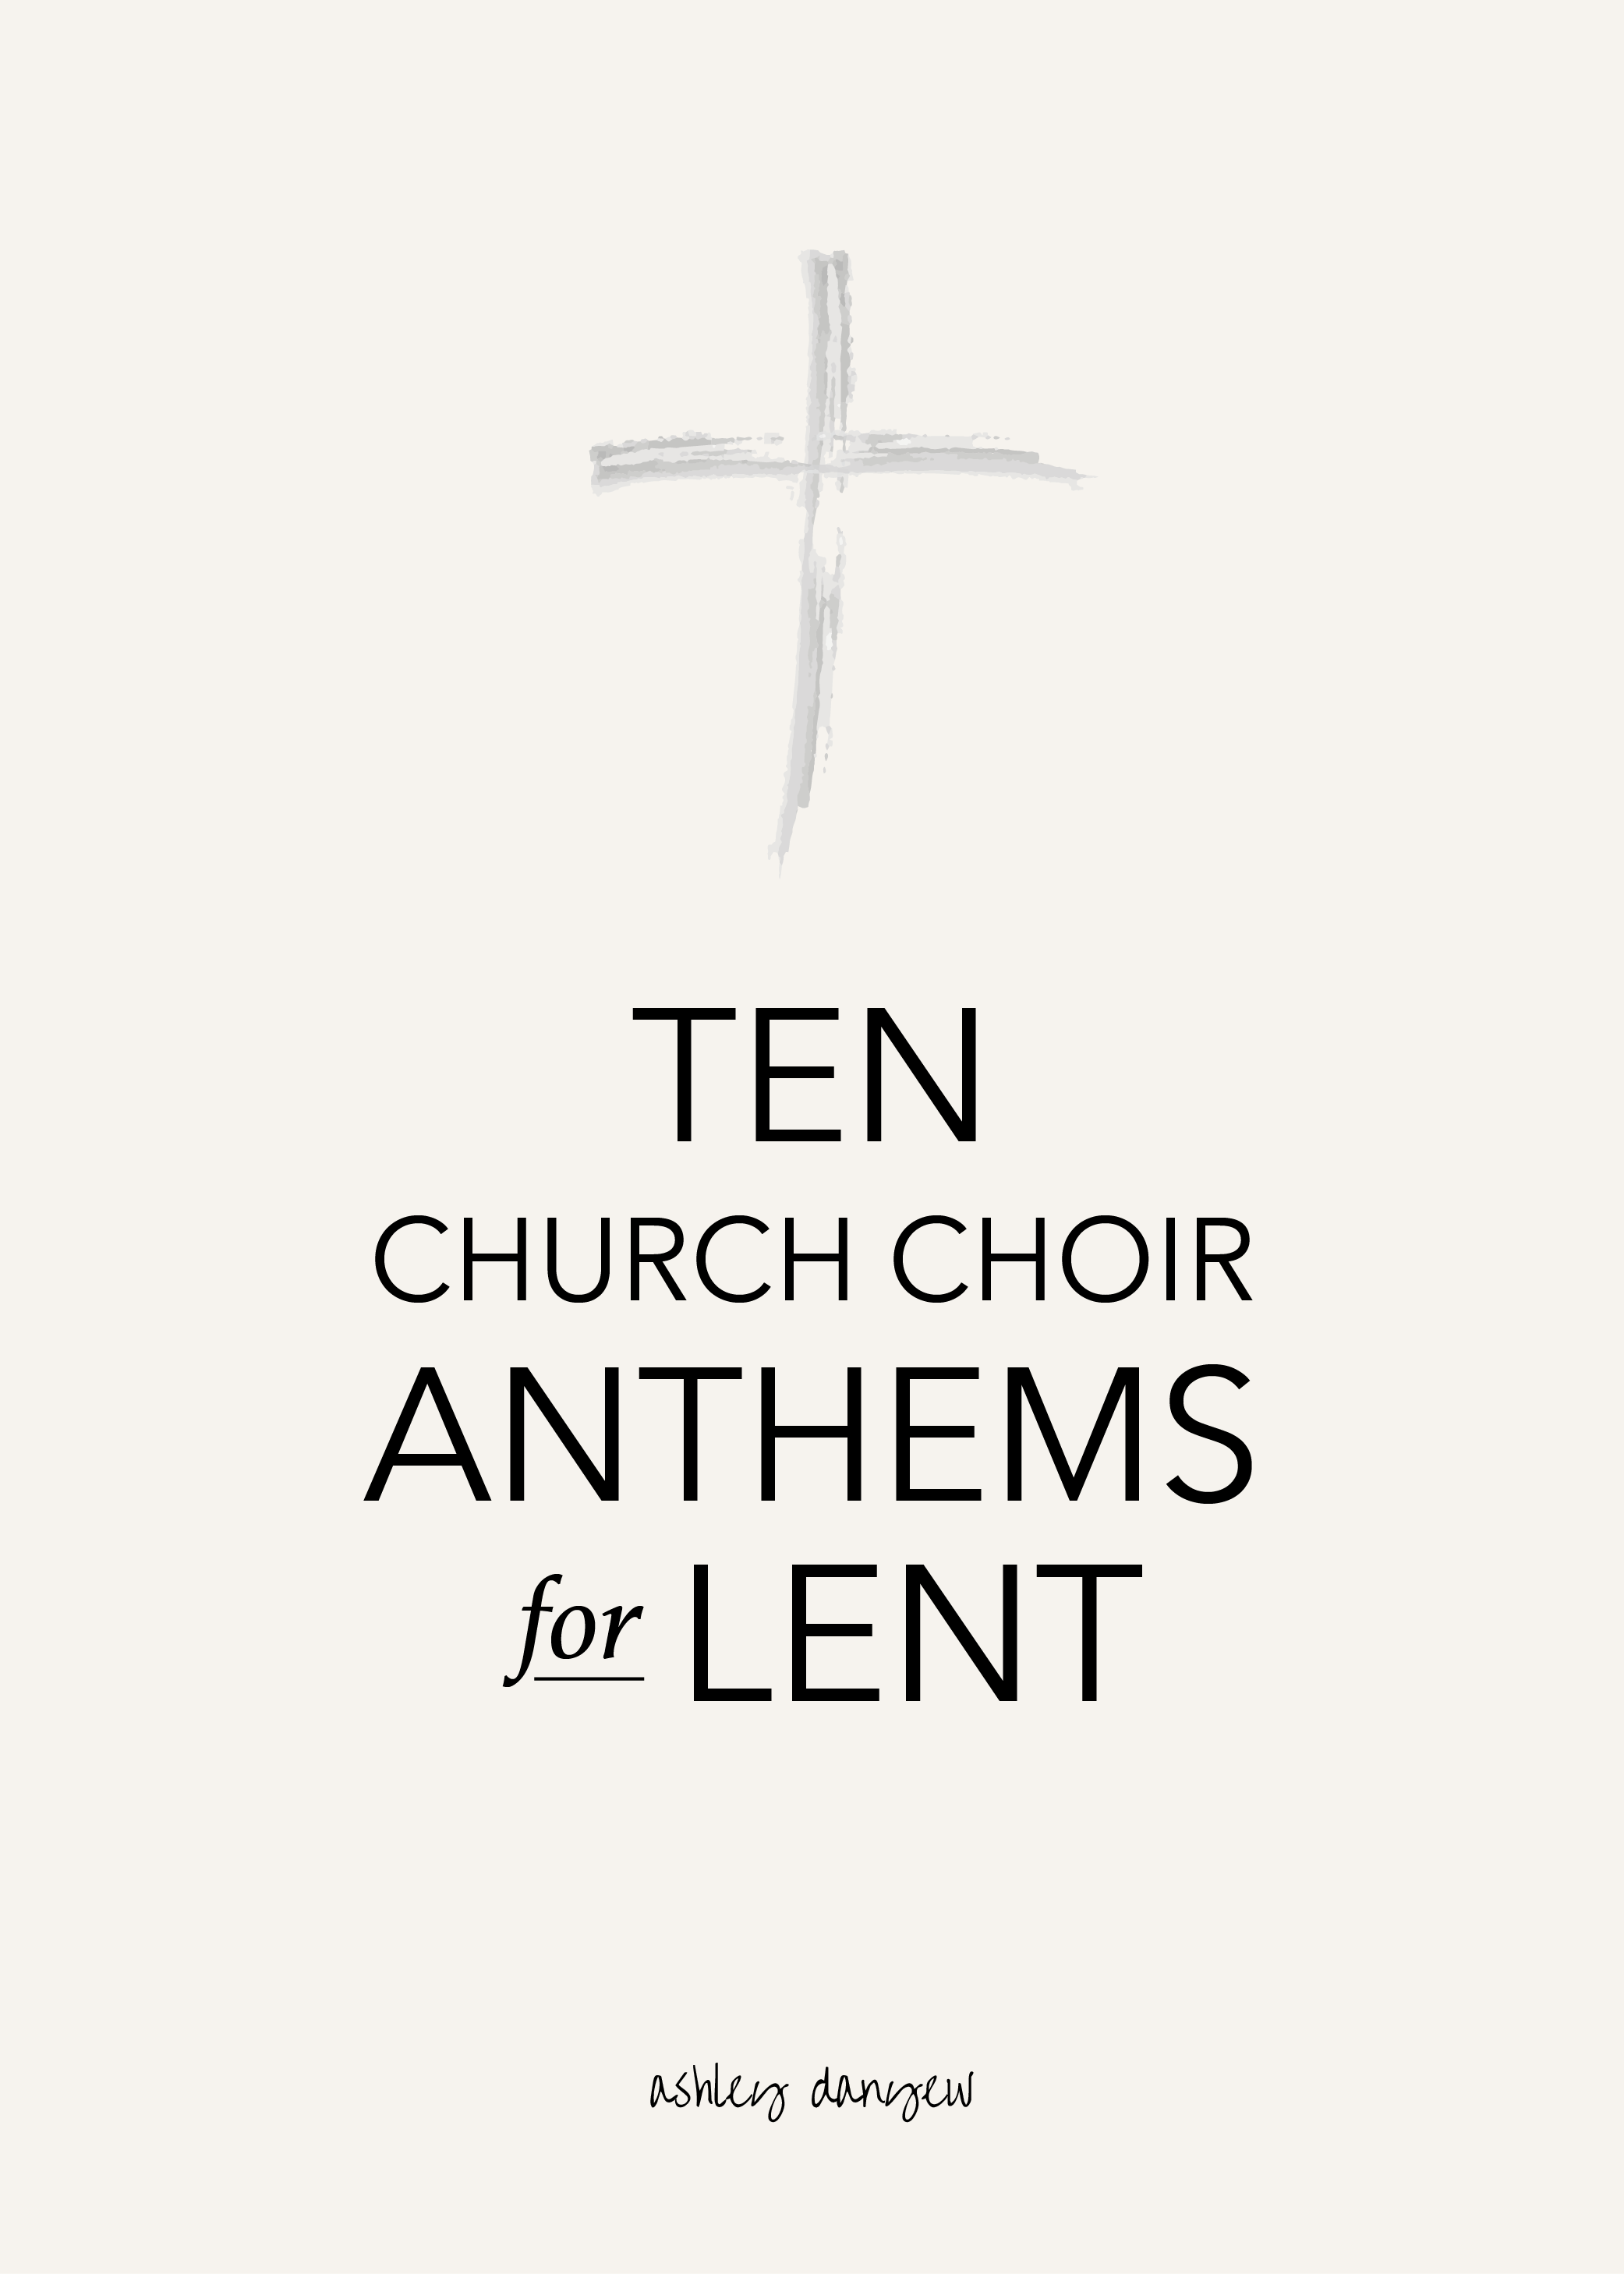 Ten Church Choir Anthems for Lent-01.png